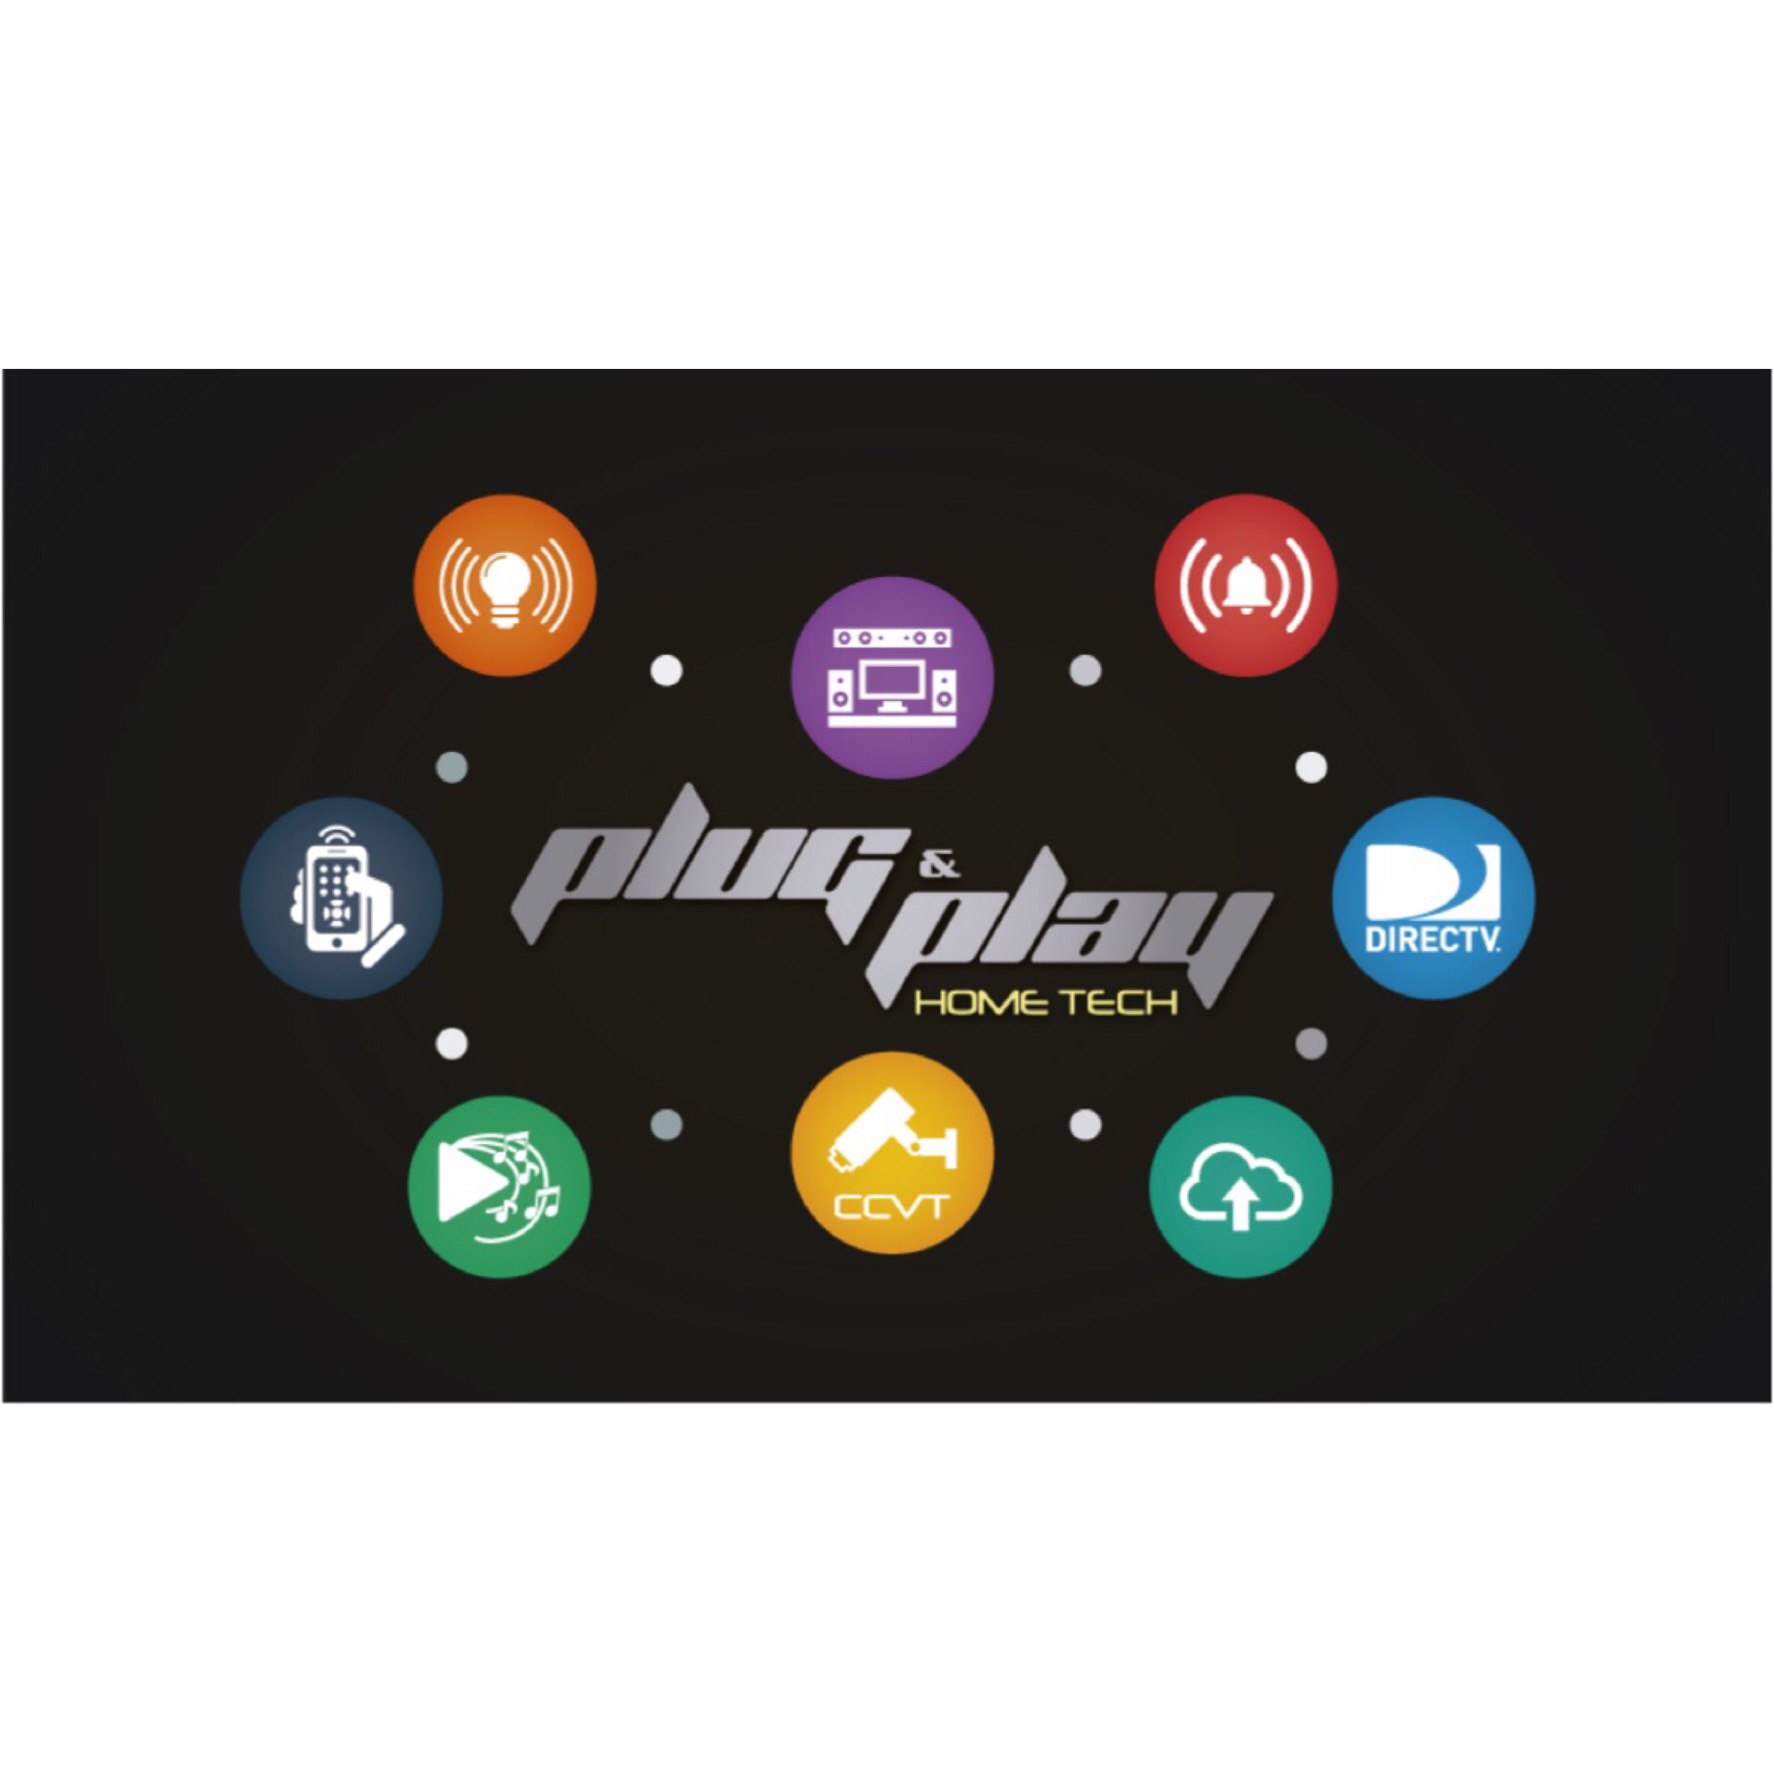 Plug & Play Home Tech Logo